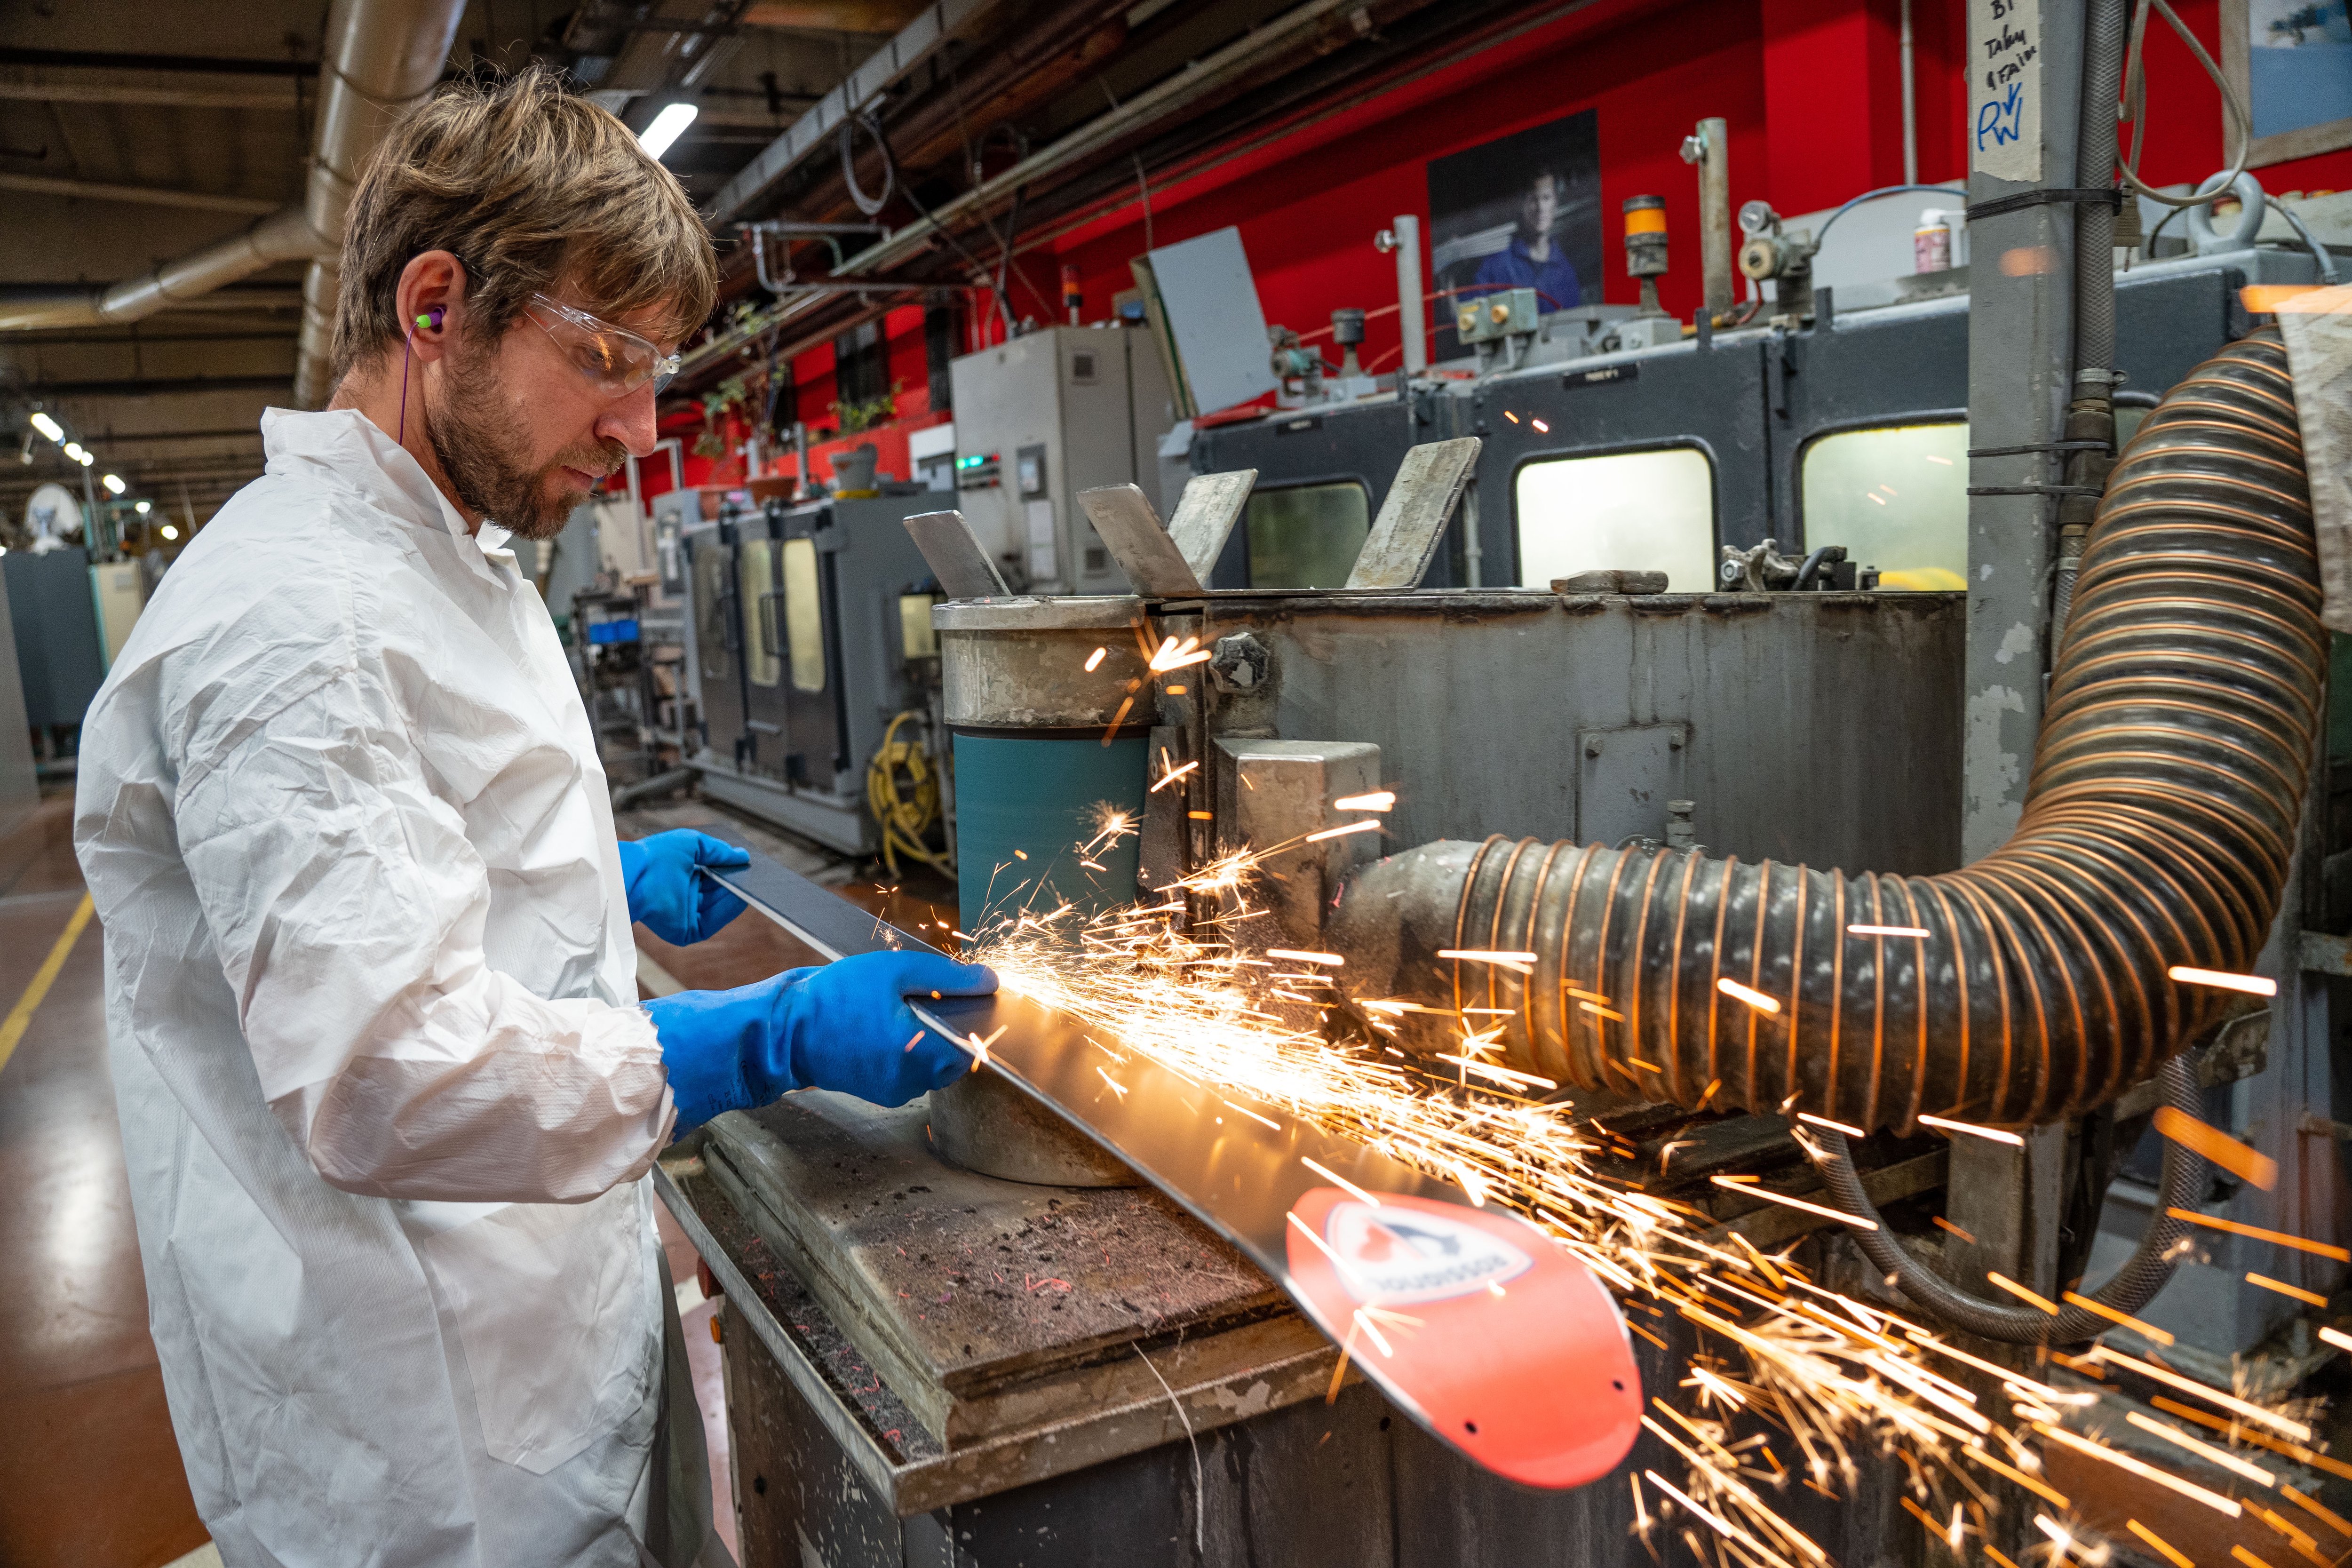 La chaîne de production de l'usine de skis Rossignol, à Sallanches (Haute-Savoie), emploie 55 personnes sur les 1250 salariés du groupe. LP/Thomas Pueyo